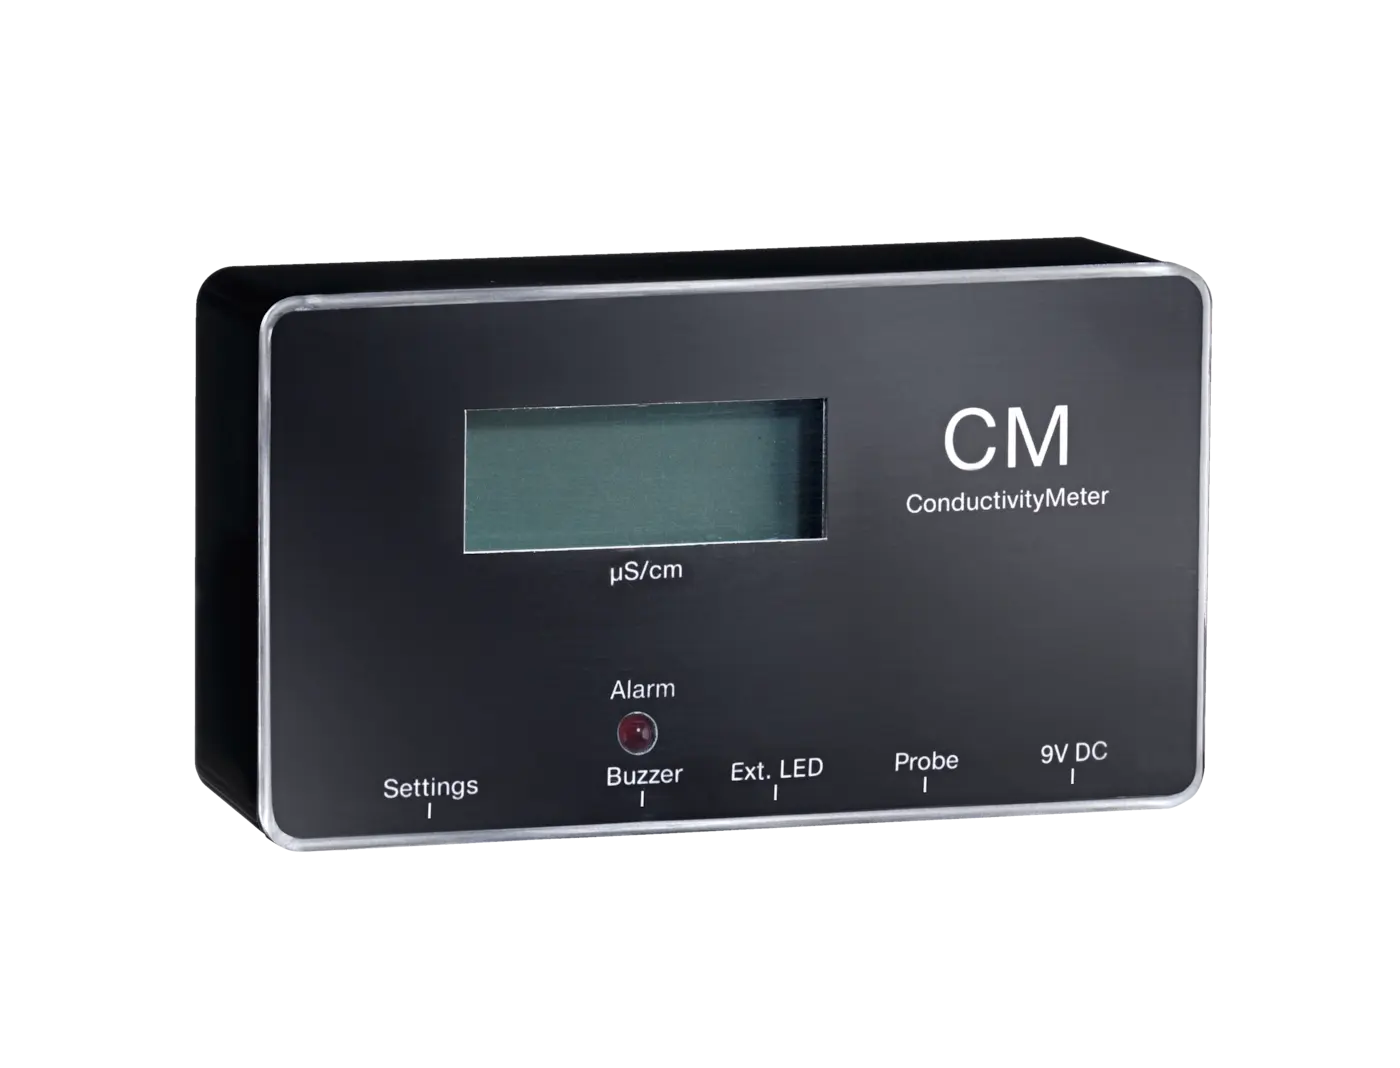 CM/1 - ConductivityMeter pro men vodivosti a indikaci vmny patrony